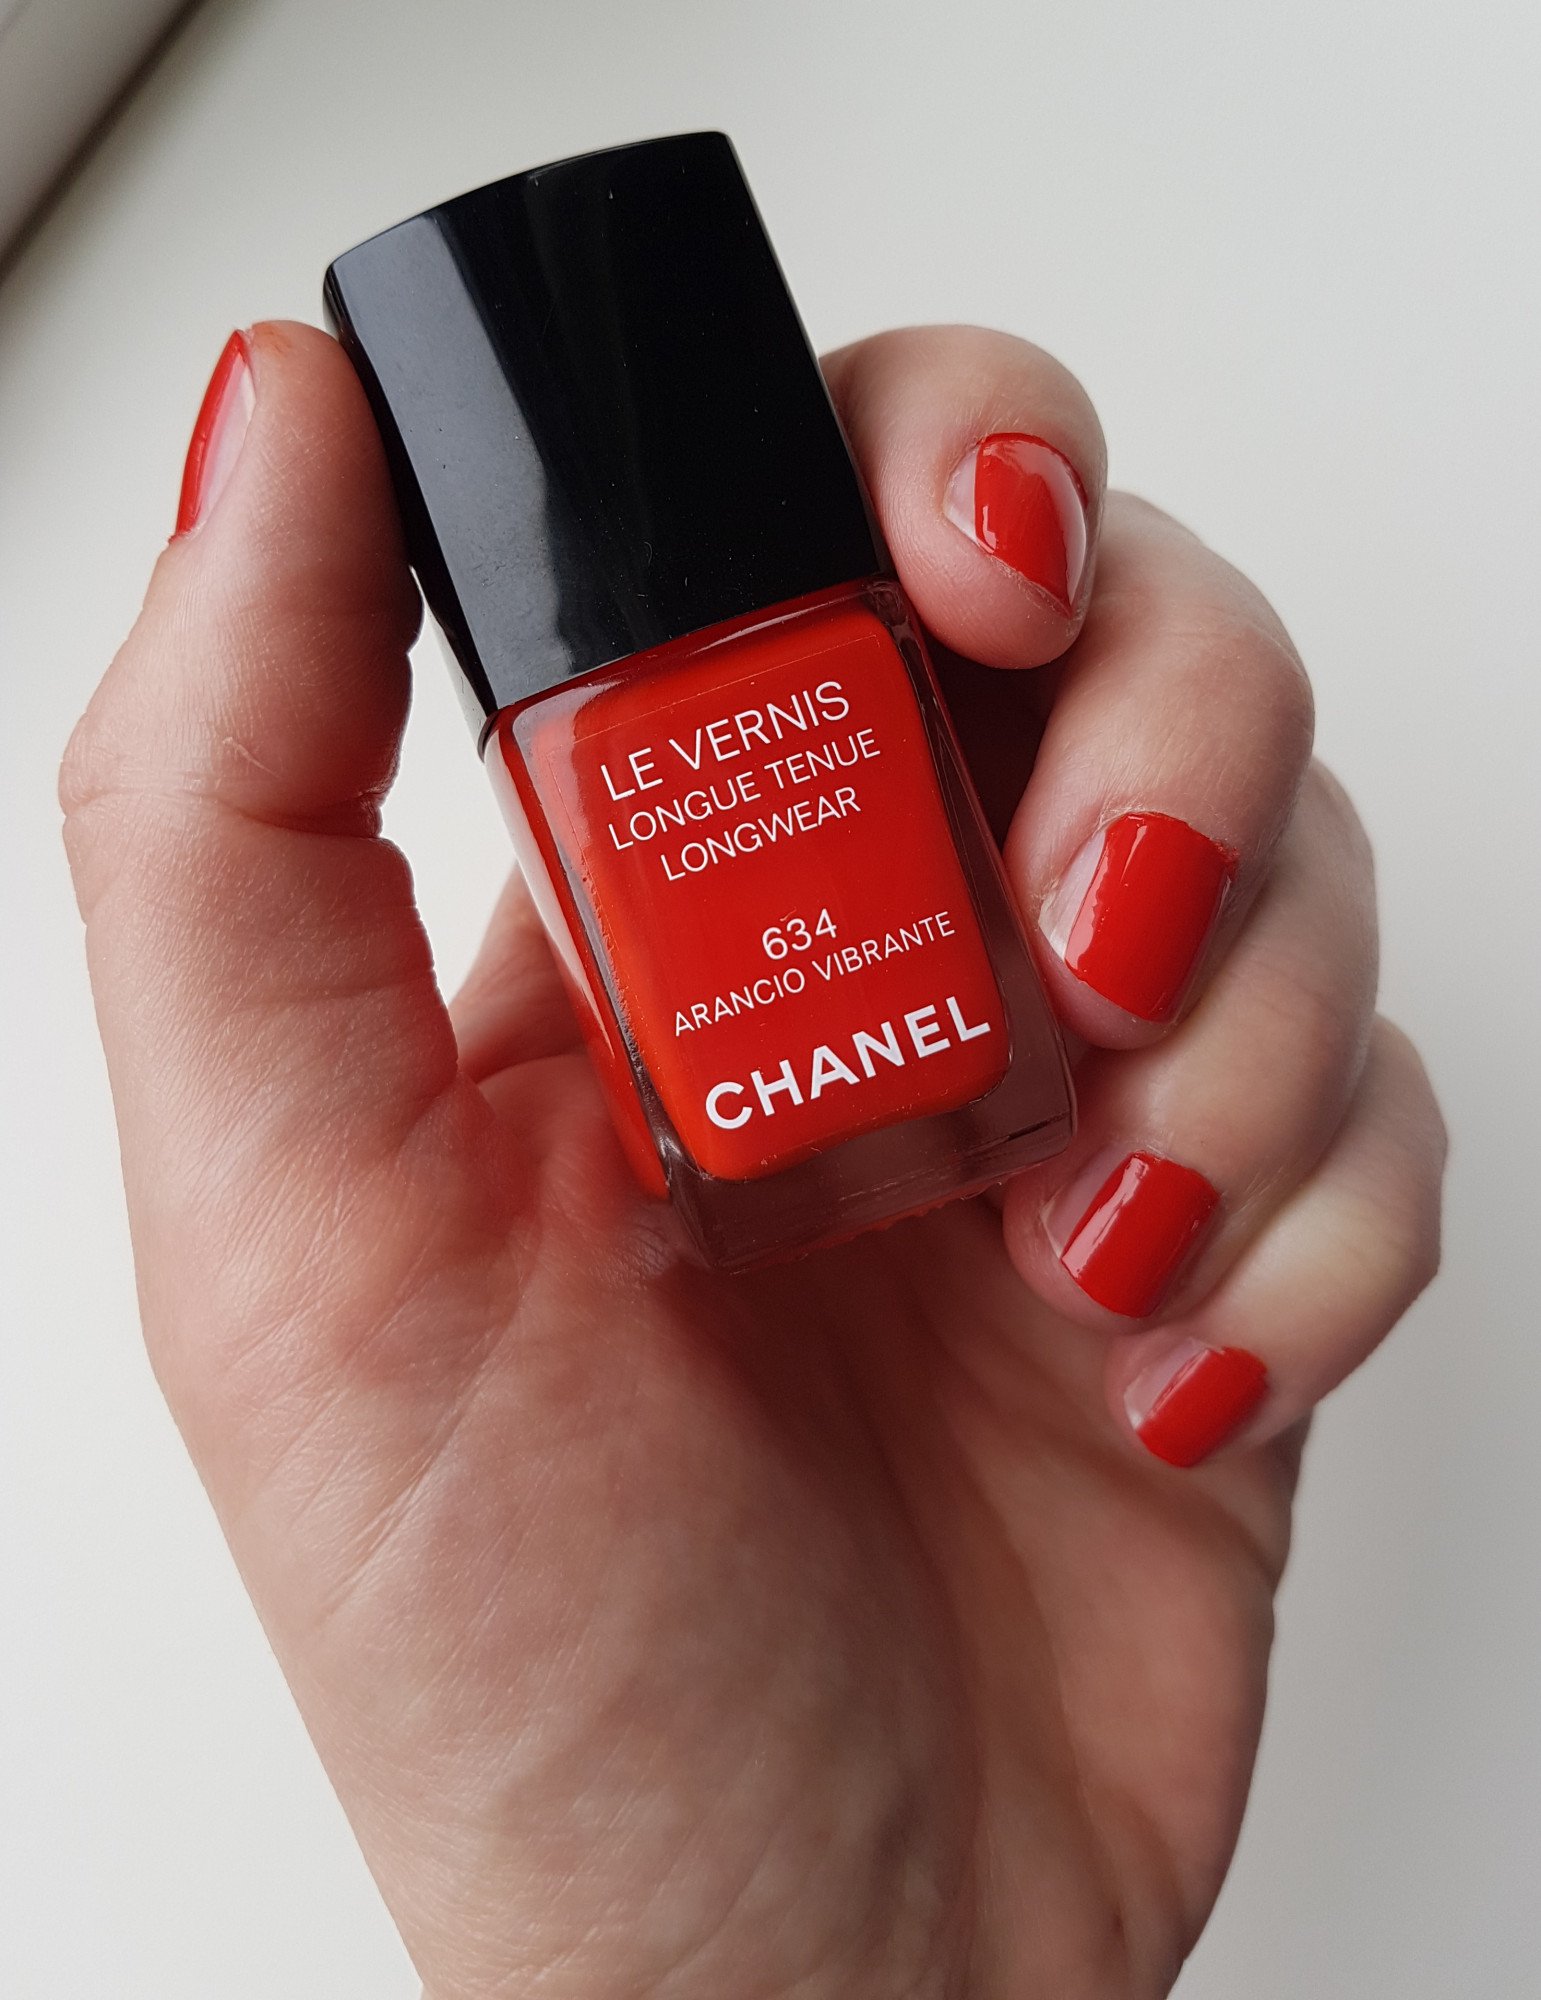 Ontdooien, ontdooien, vorst ontdooien Voorwoord cursief Pretty Chanel nagellak - Pearls&Stripes Blog